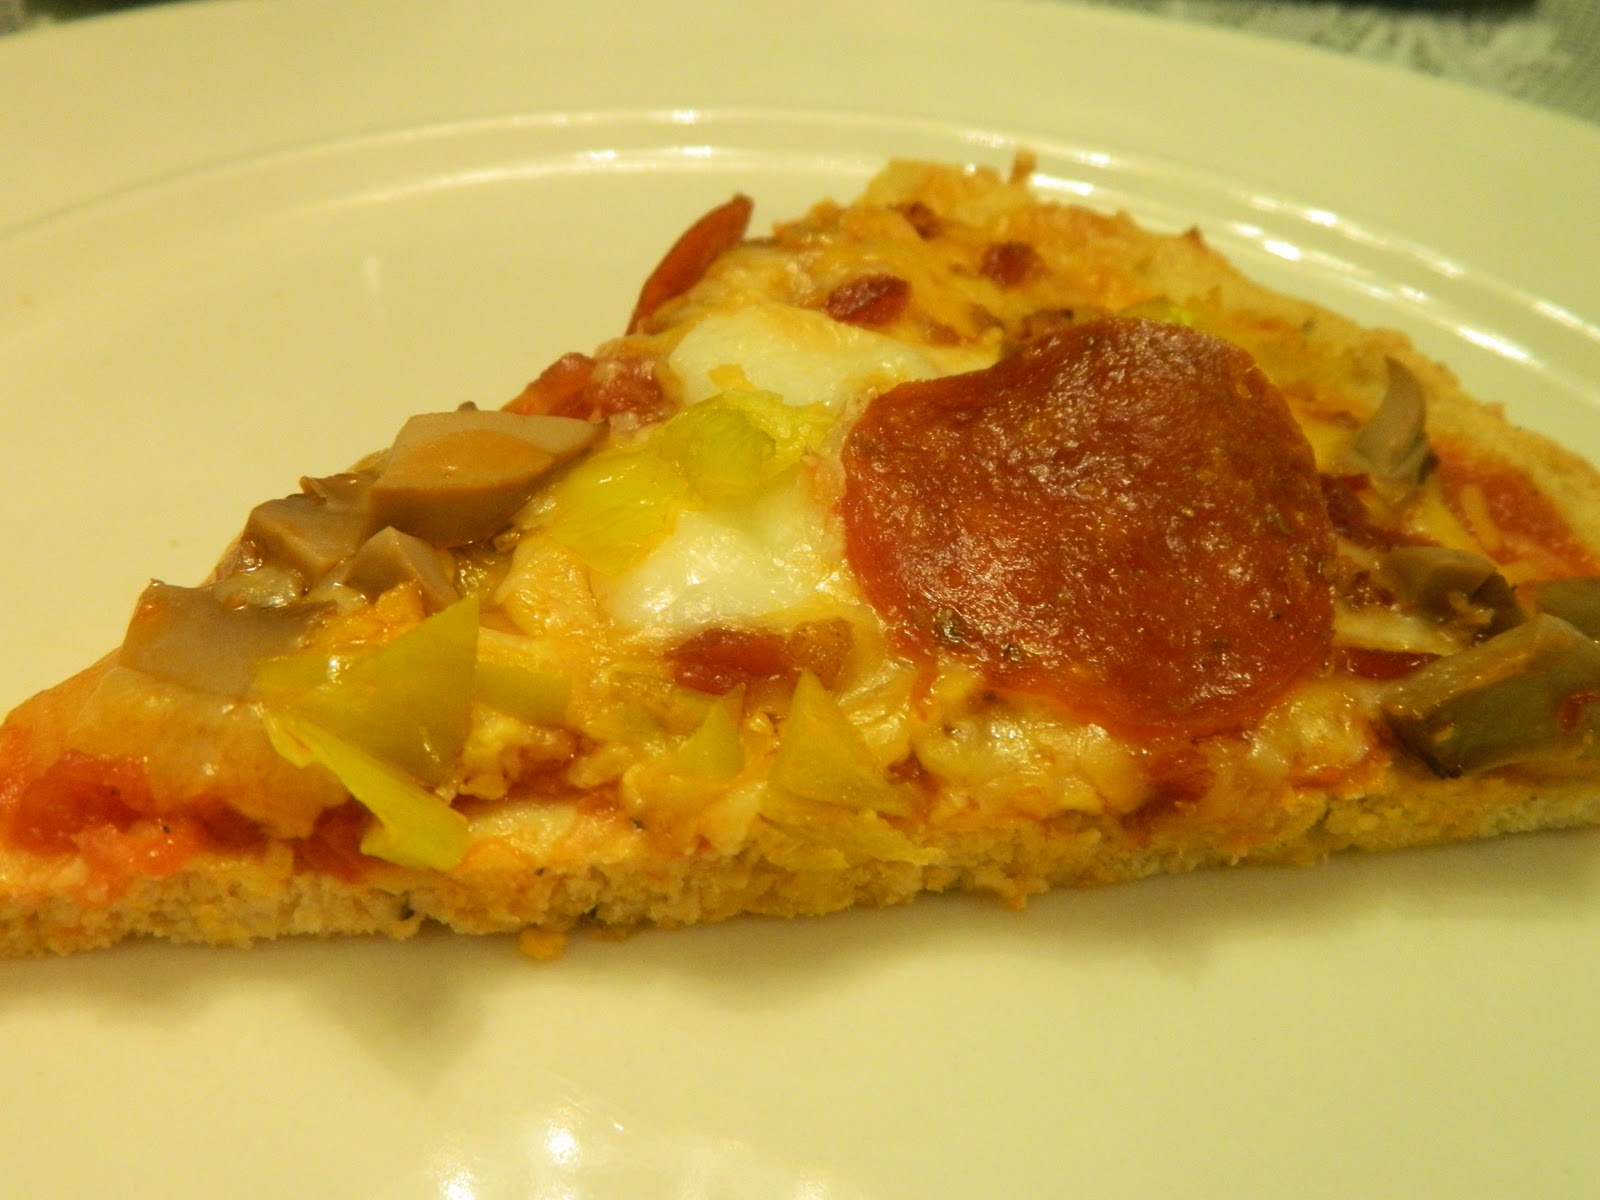 chicken+coconut+flour+pizza+crust+2012-02-02+008.JPG